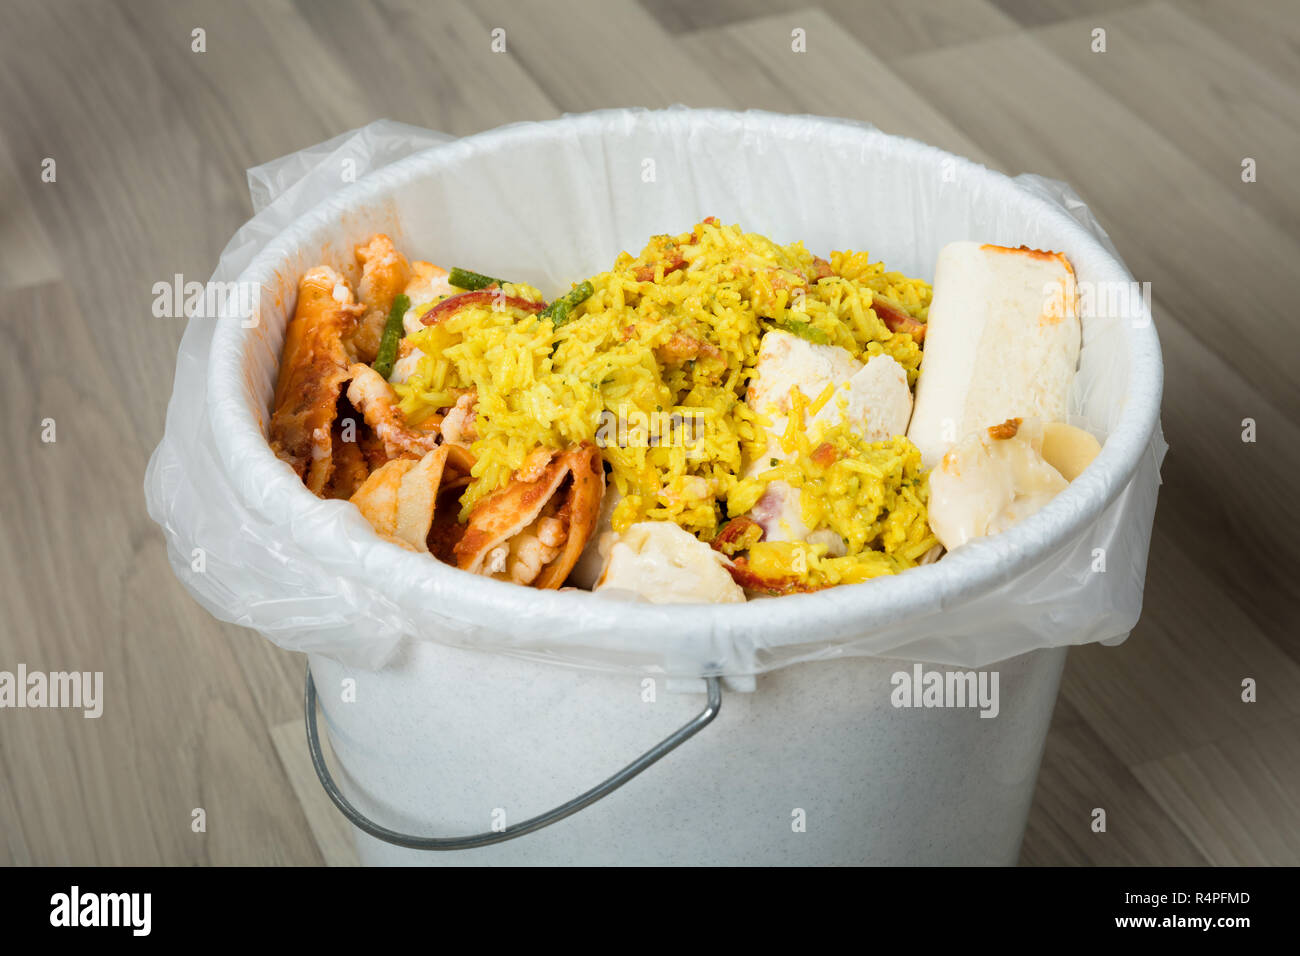 Leftover Food In Trash Bin Stock Photo